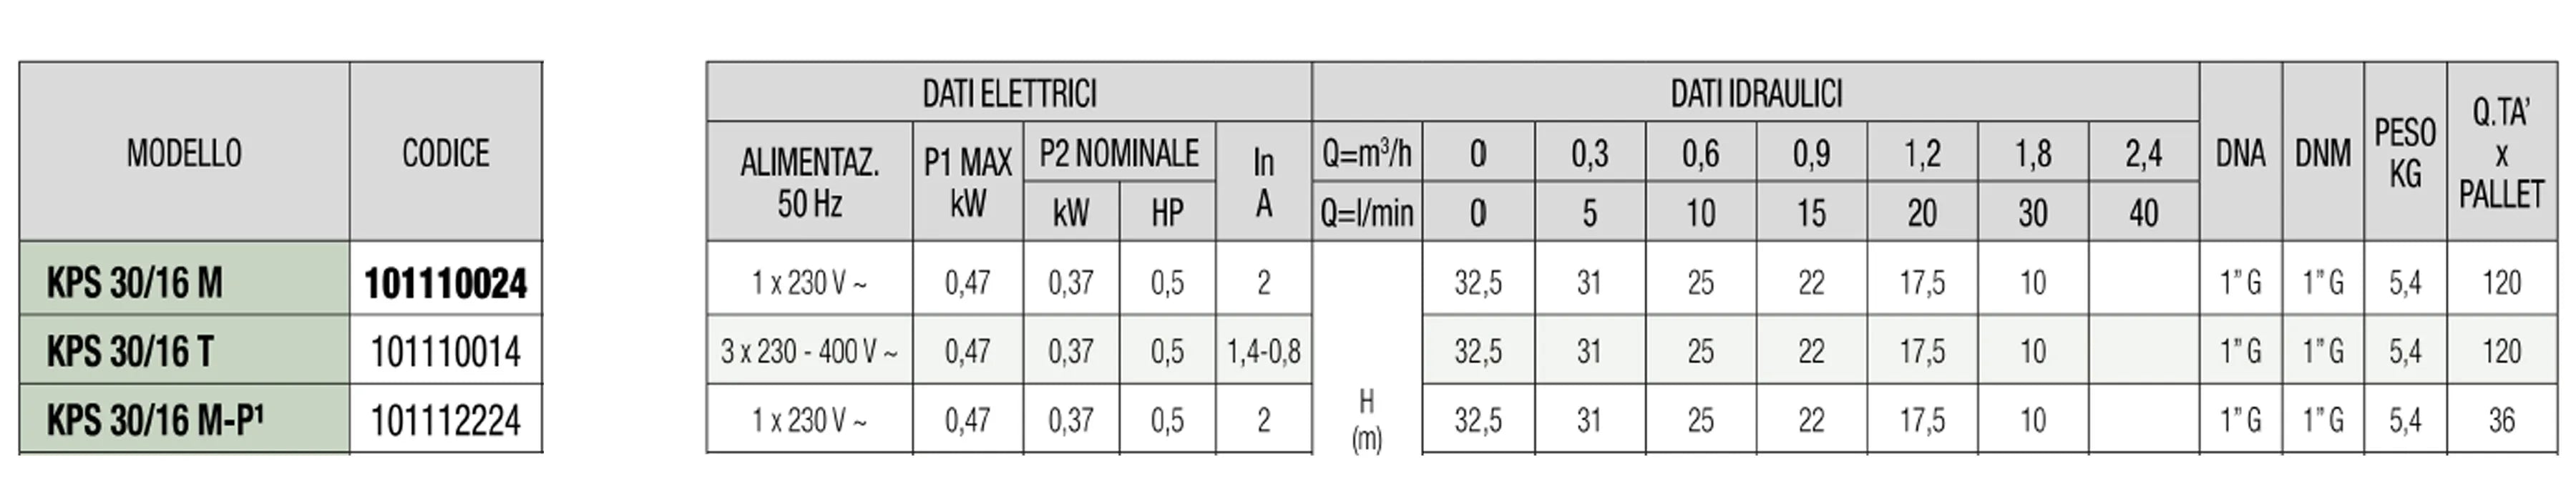 Dab - Elettropompa Periferica 0,4 HP KPS 30/16 M - Articolo: 101110024H